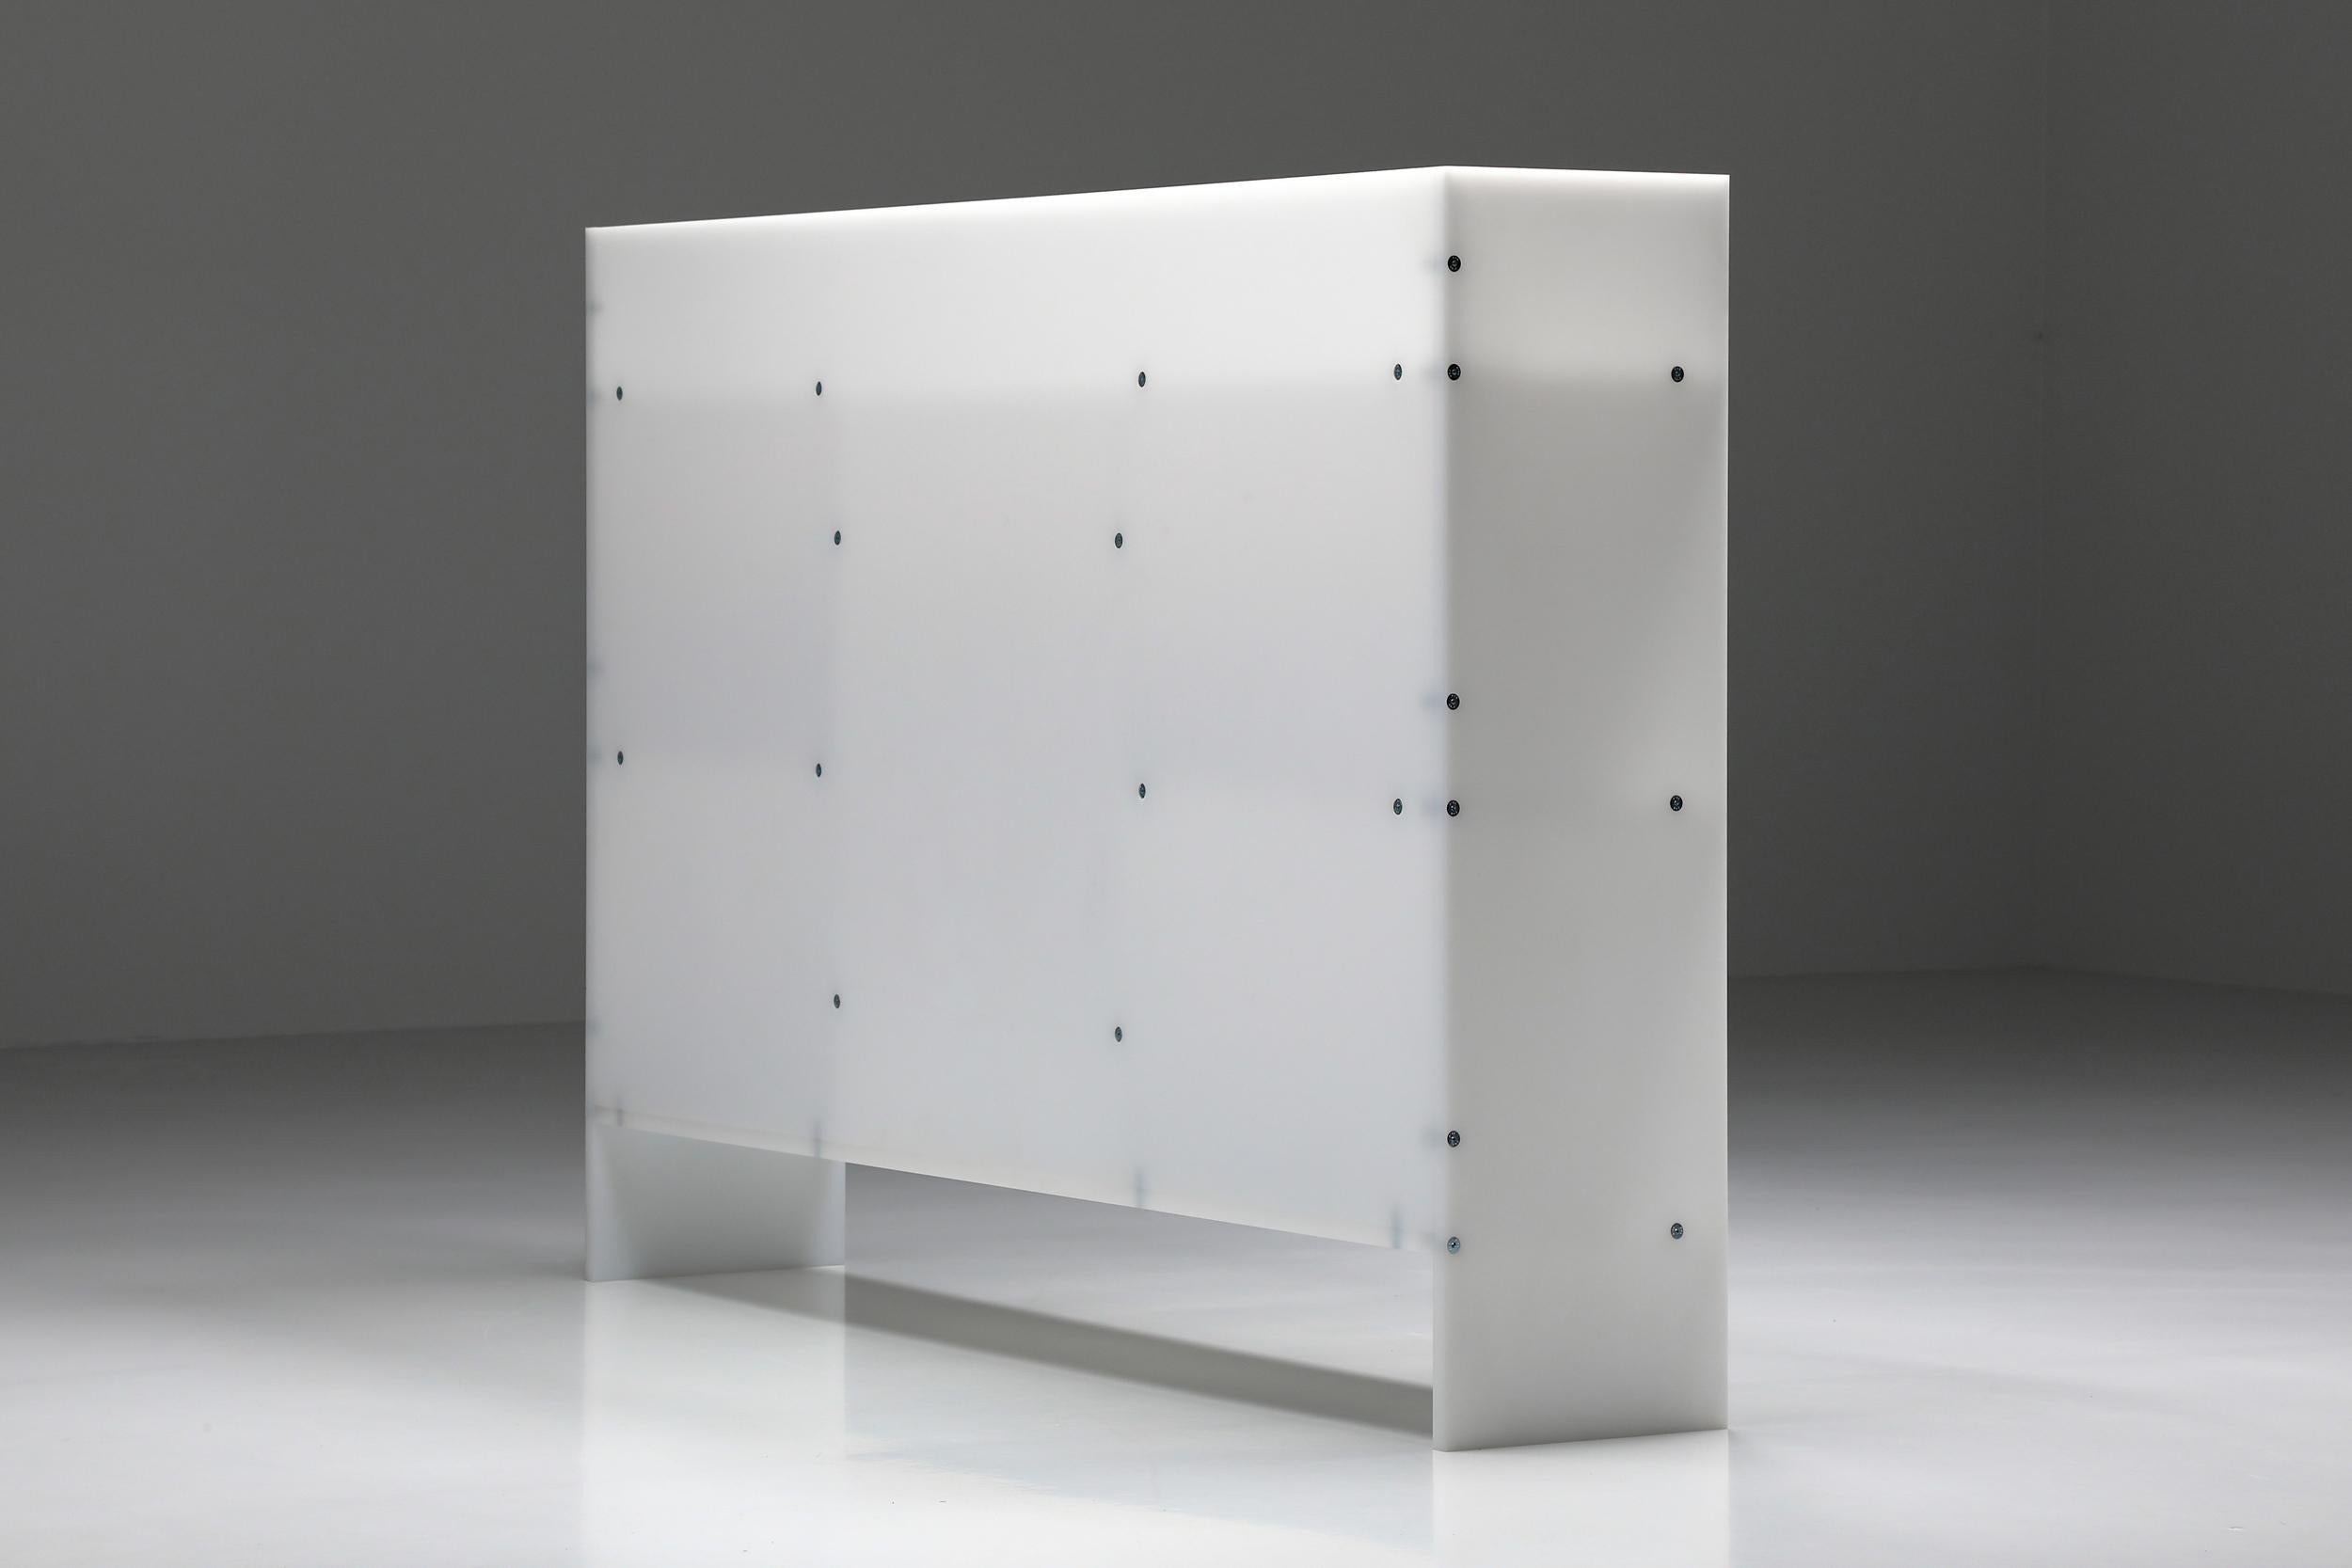 Plastic Contemporary Shelve Unit by Johan Viladrich, Collectible Design, 2020, Rotterdam For Sale